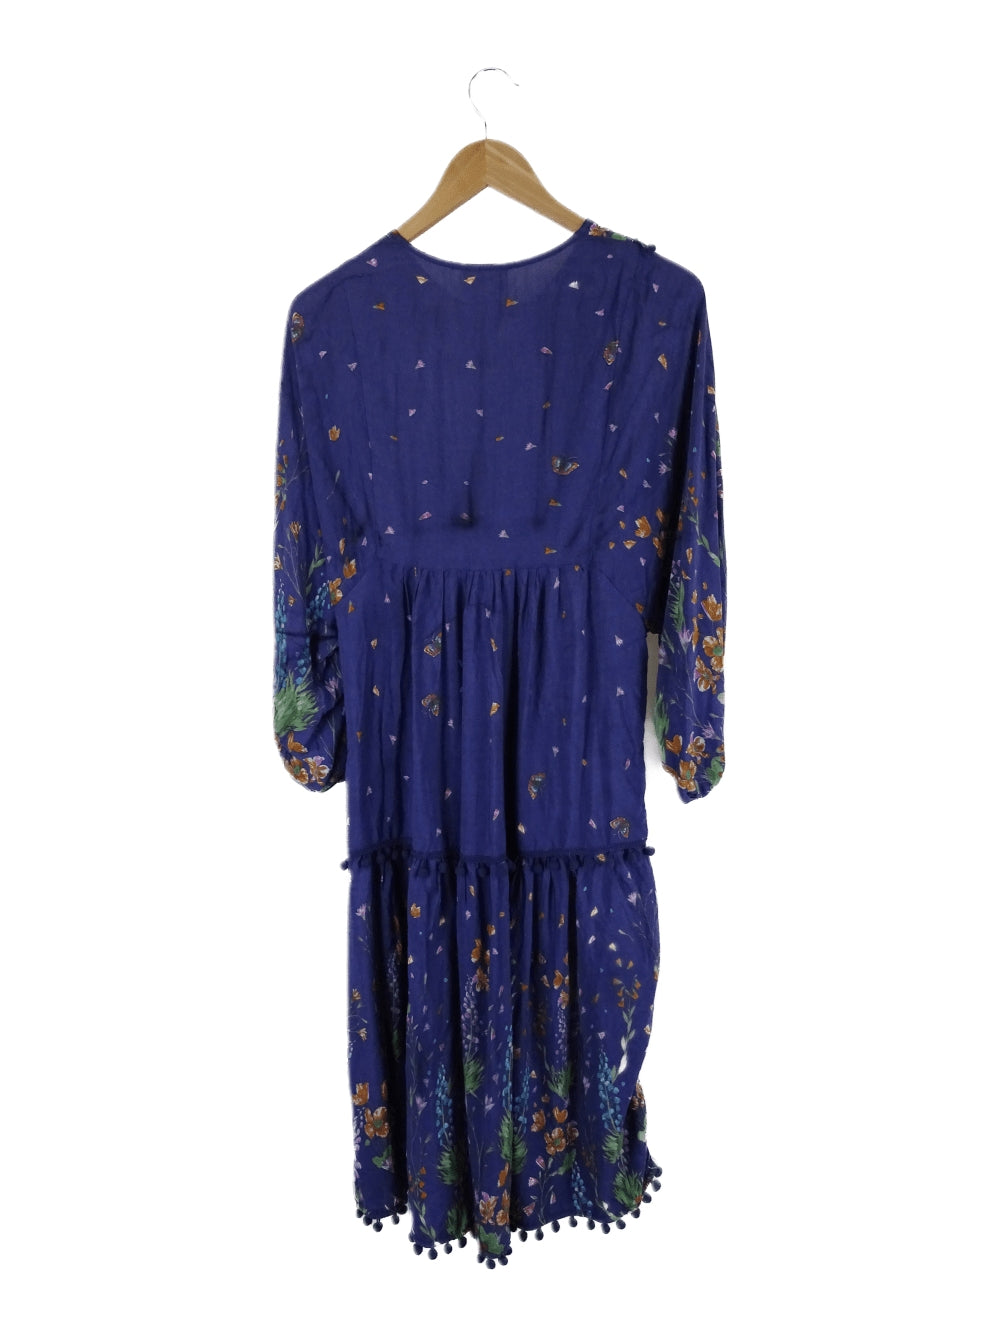 Jaase Blue Floral Dress S